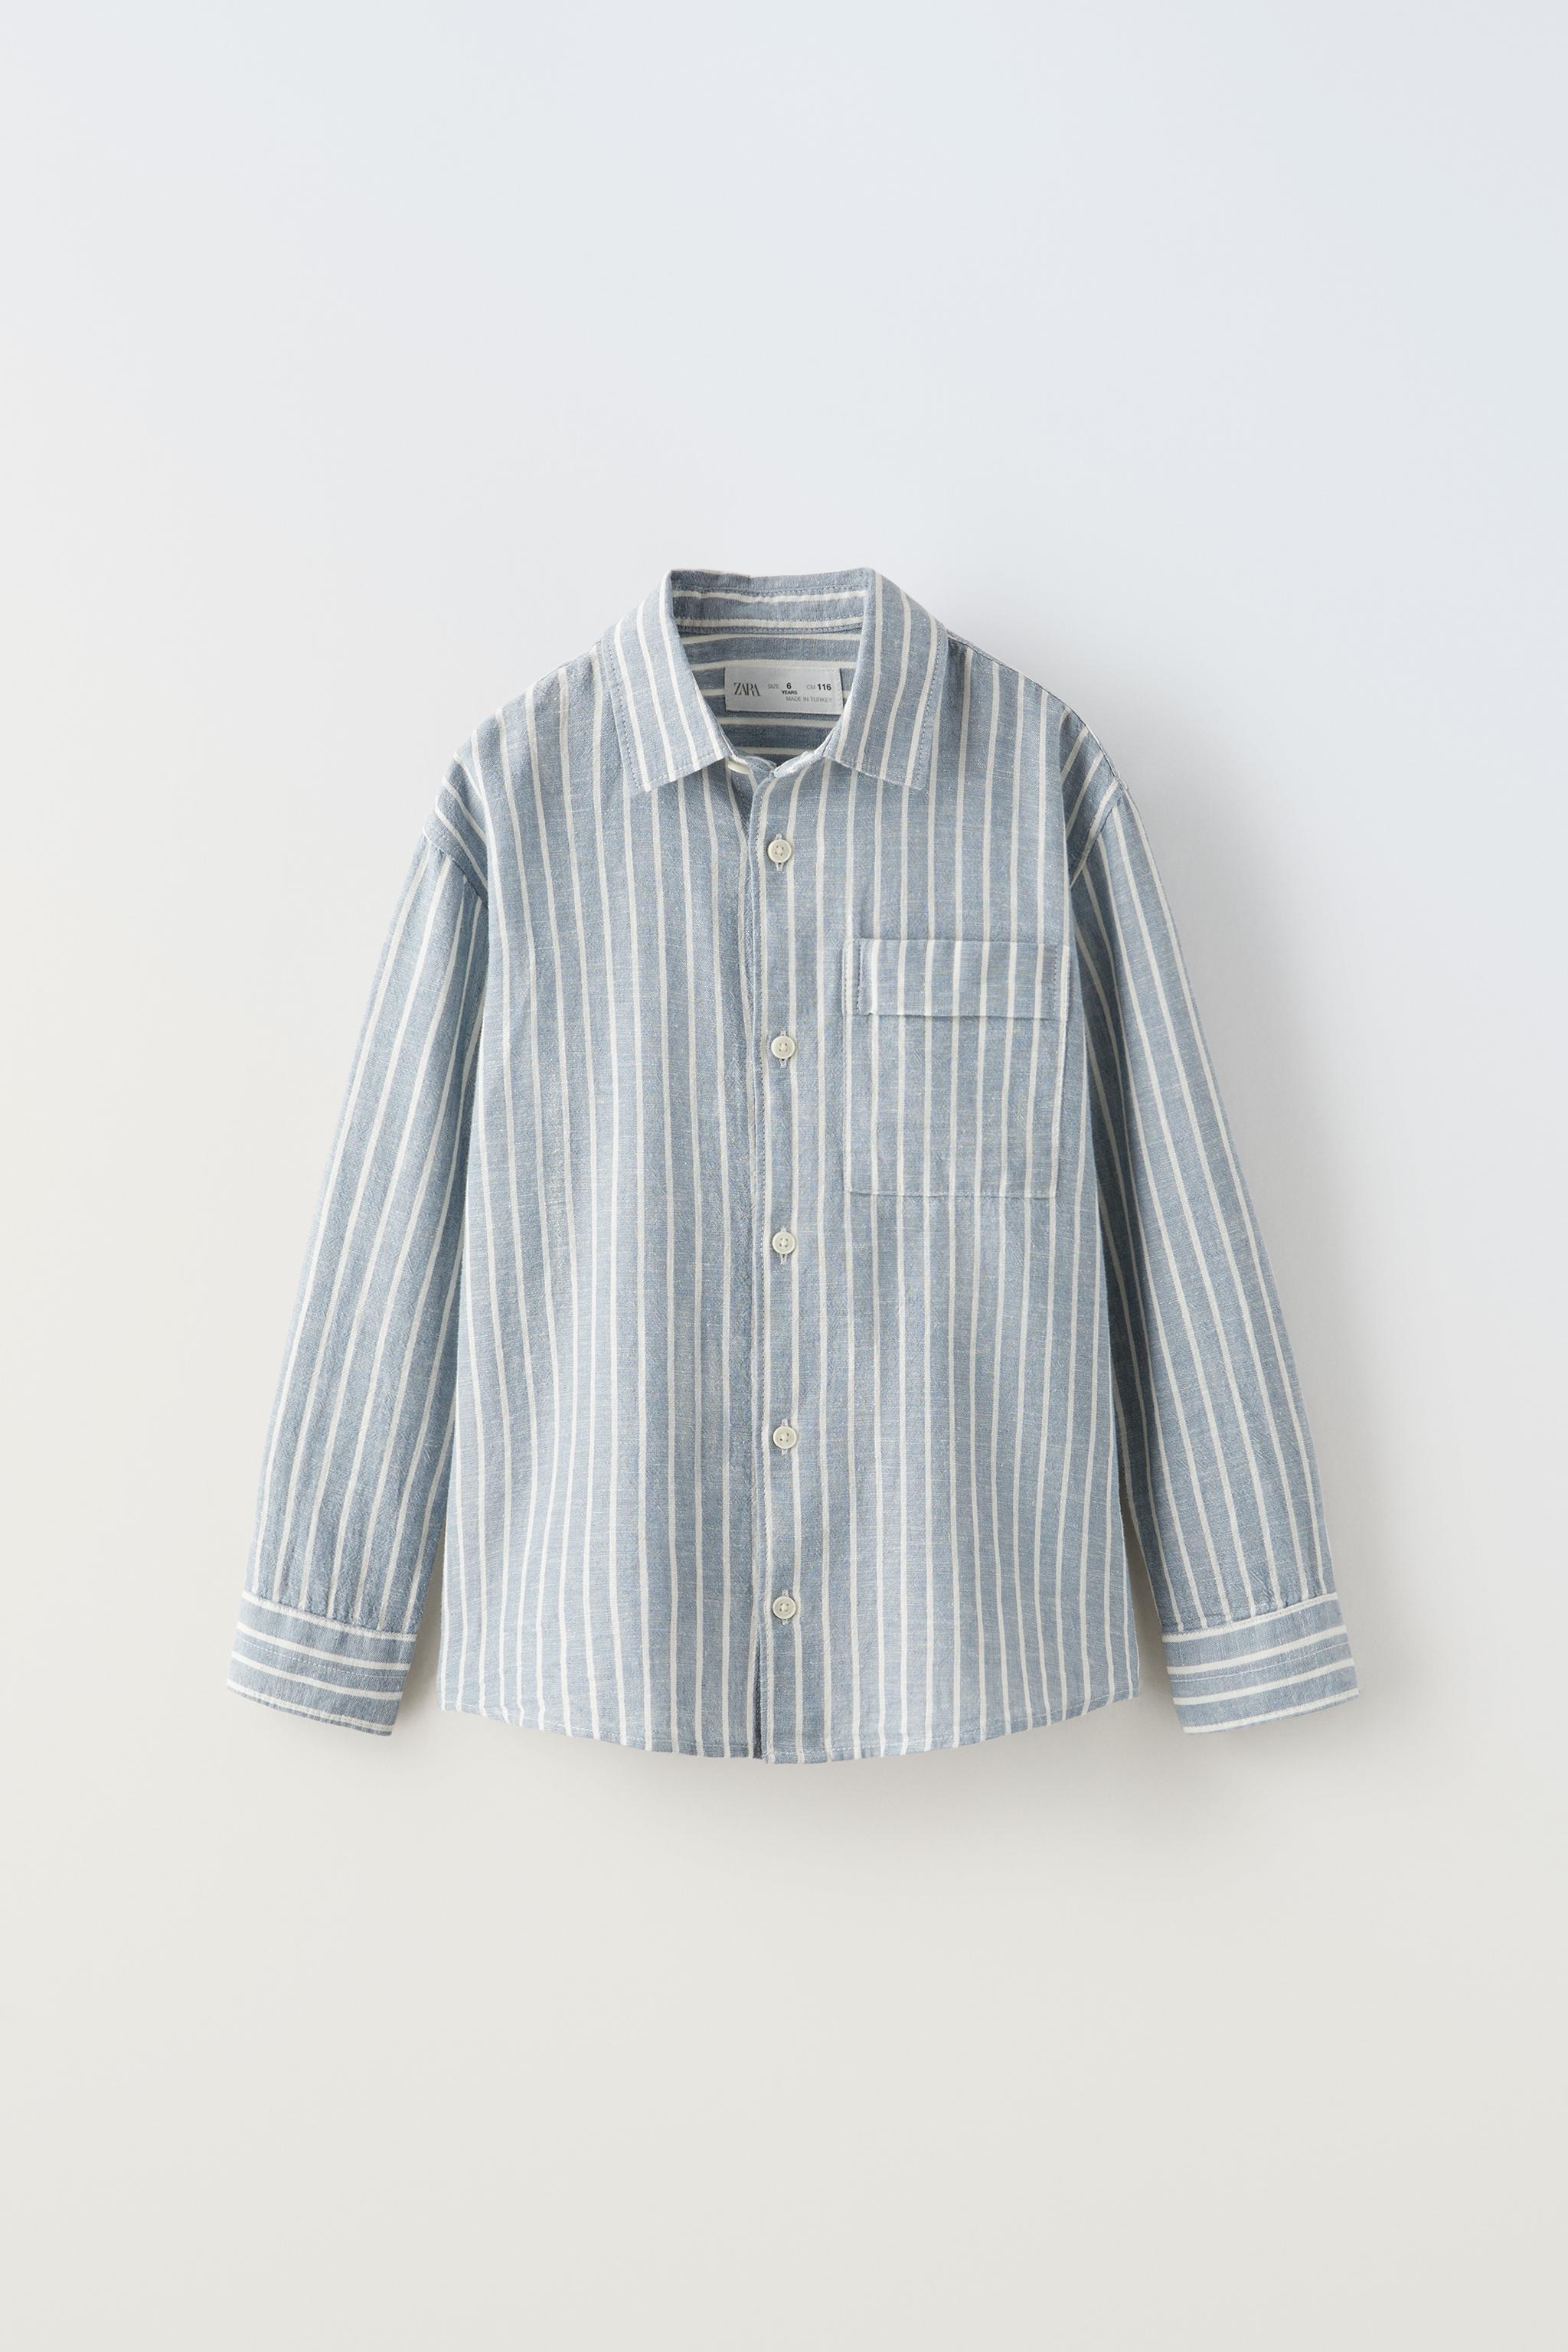 NWT Zara Geometric Print Button Down Shirt Blue/Brown Sz. Medium